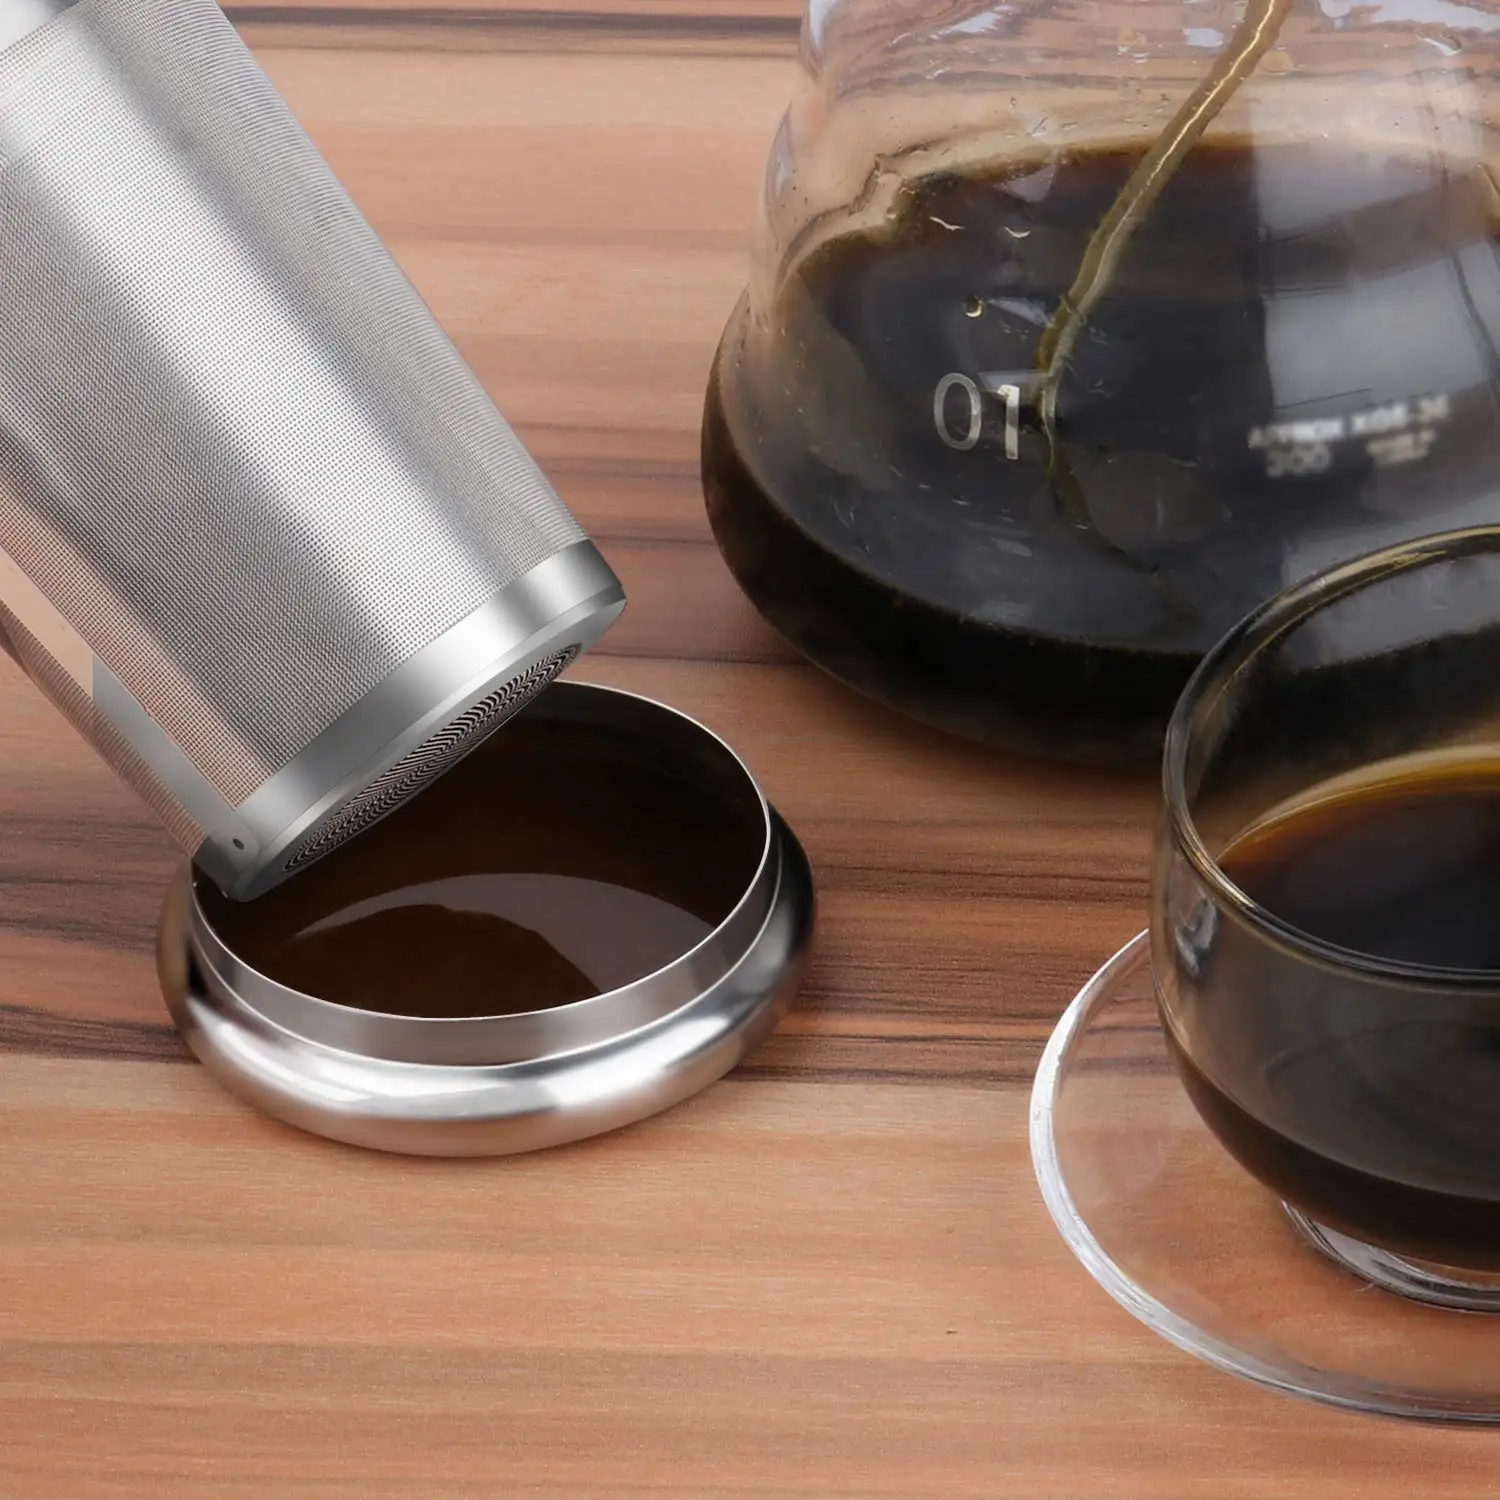 Многослойная сетка для заваривания чая, многоразовый фильтр для кофе-подходит для стандартных чашек, кружек, чайных горшков-Идеальный фильтр из нержавеющей стали для заваривания